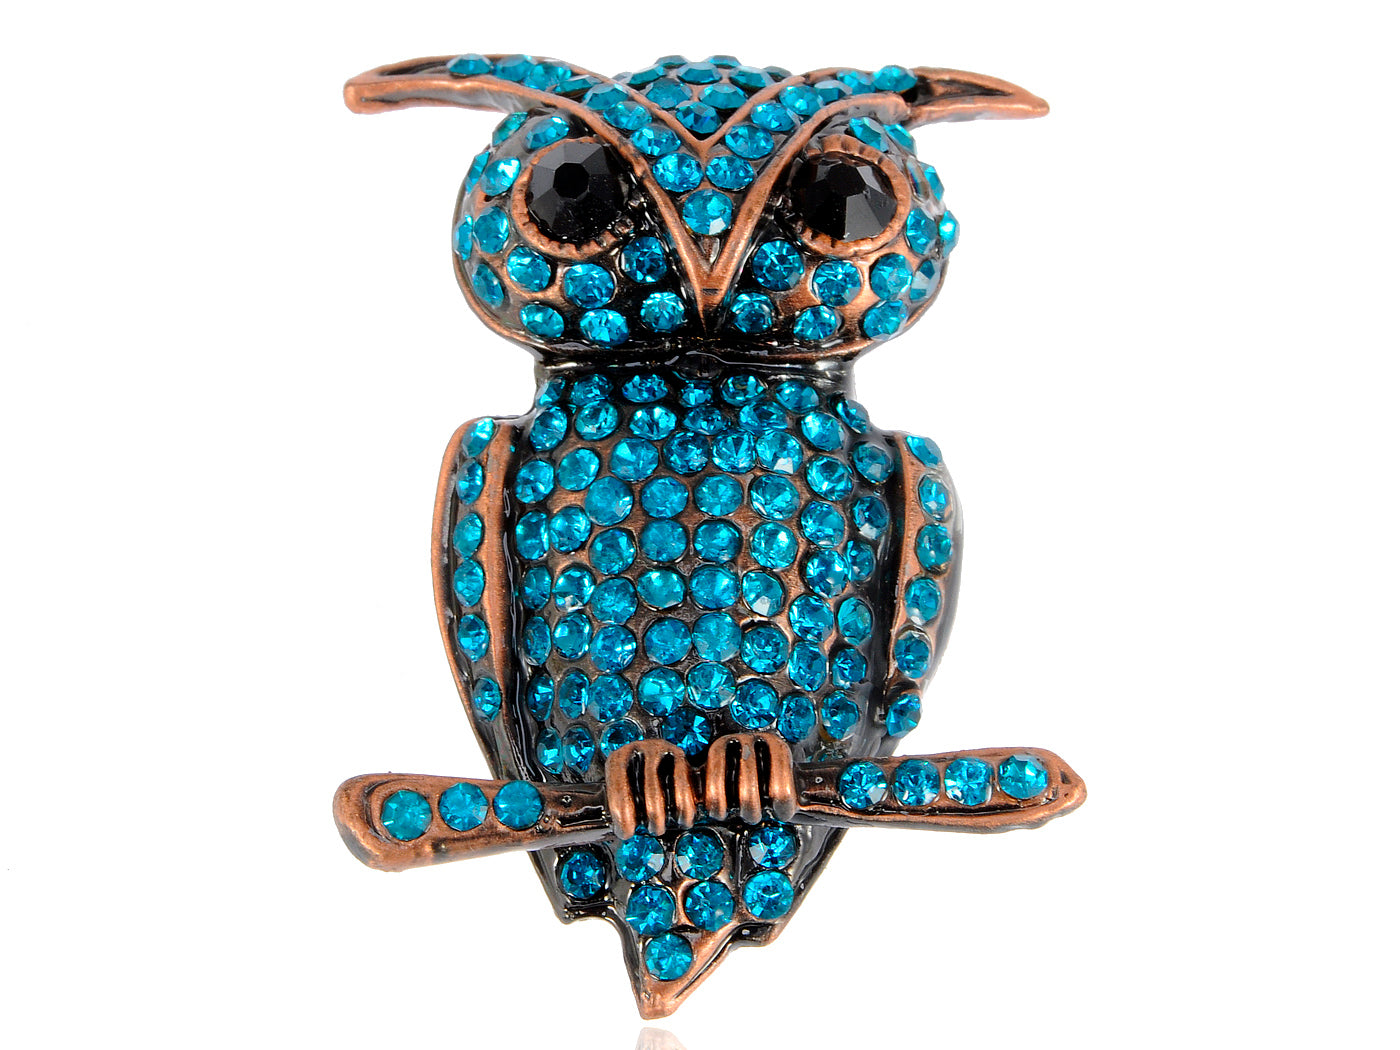 Light Blue Little Owl Hoot Bird Branch Brooch Pin